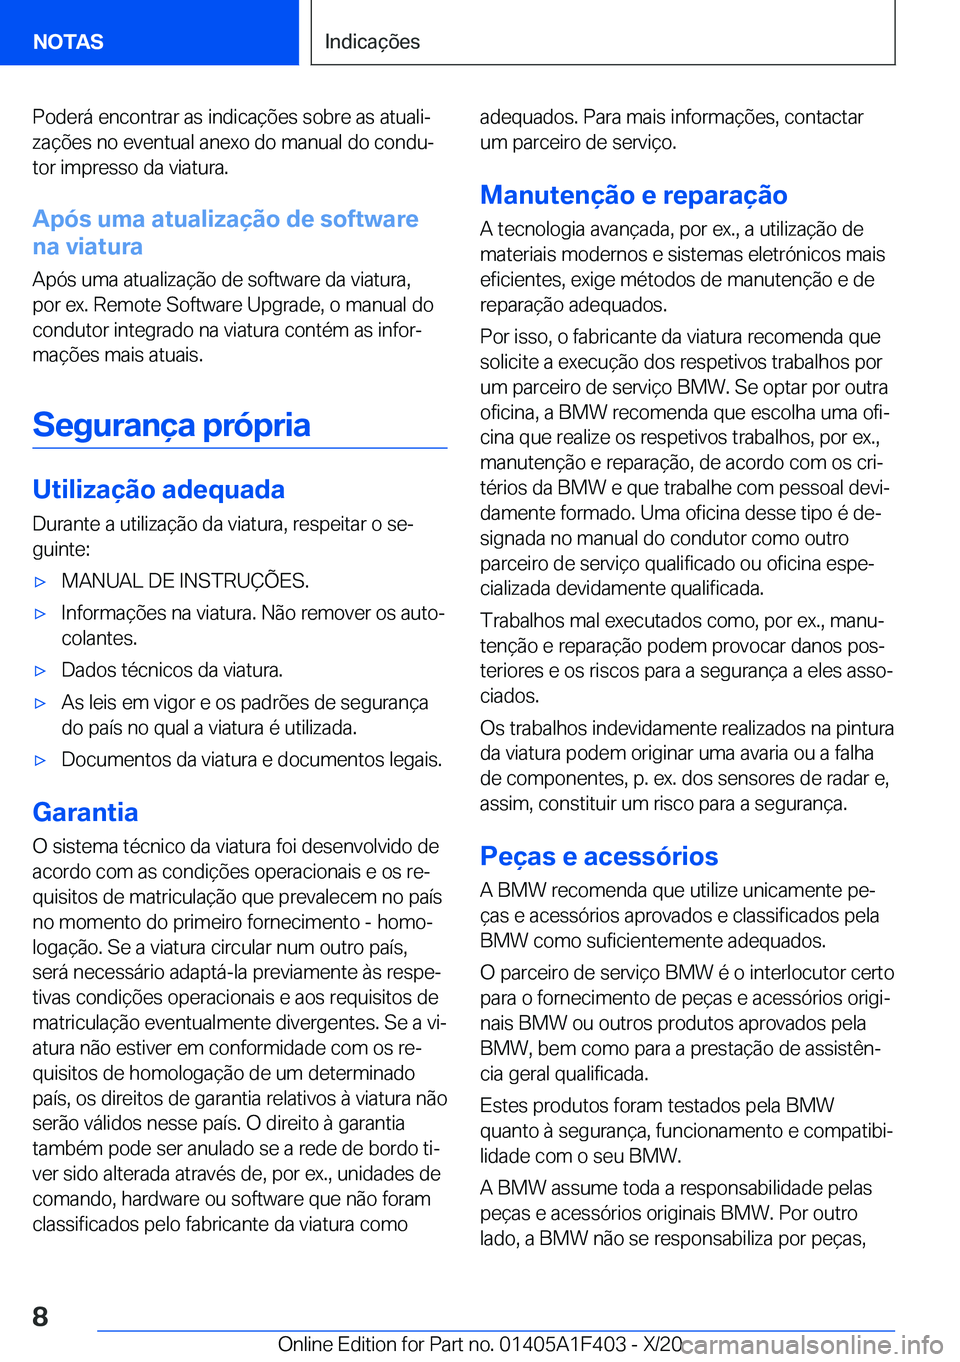 BMW X5 2021  Manual do condutor (in Portuguese) �P�o�d�e�r�á��e�n�c�o�n�t�r�a�r��a�s��i�n�d�i�c�a�